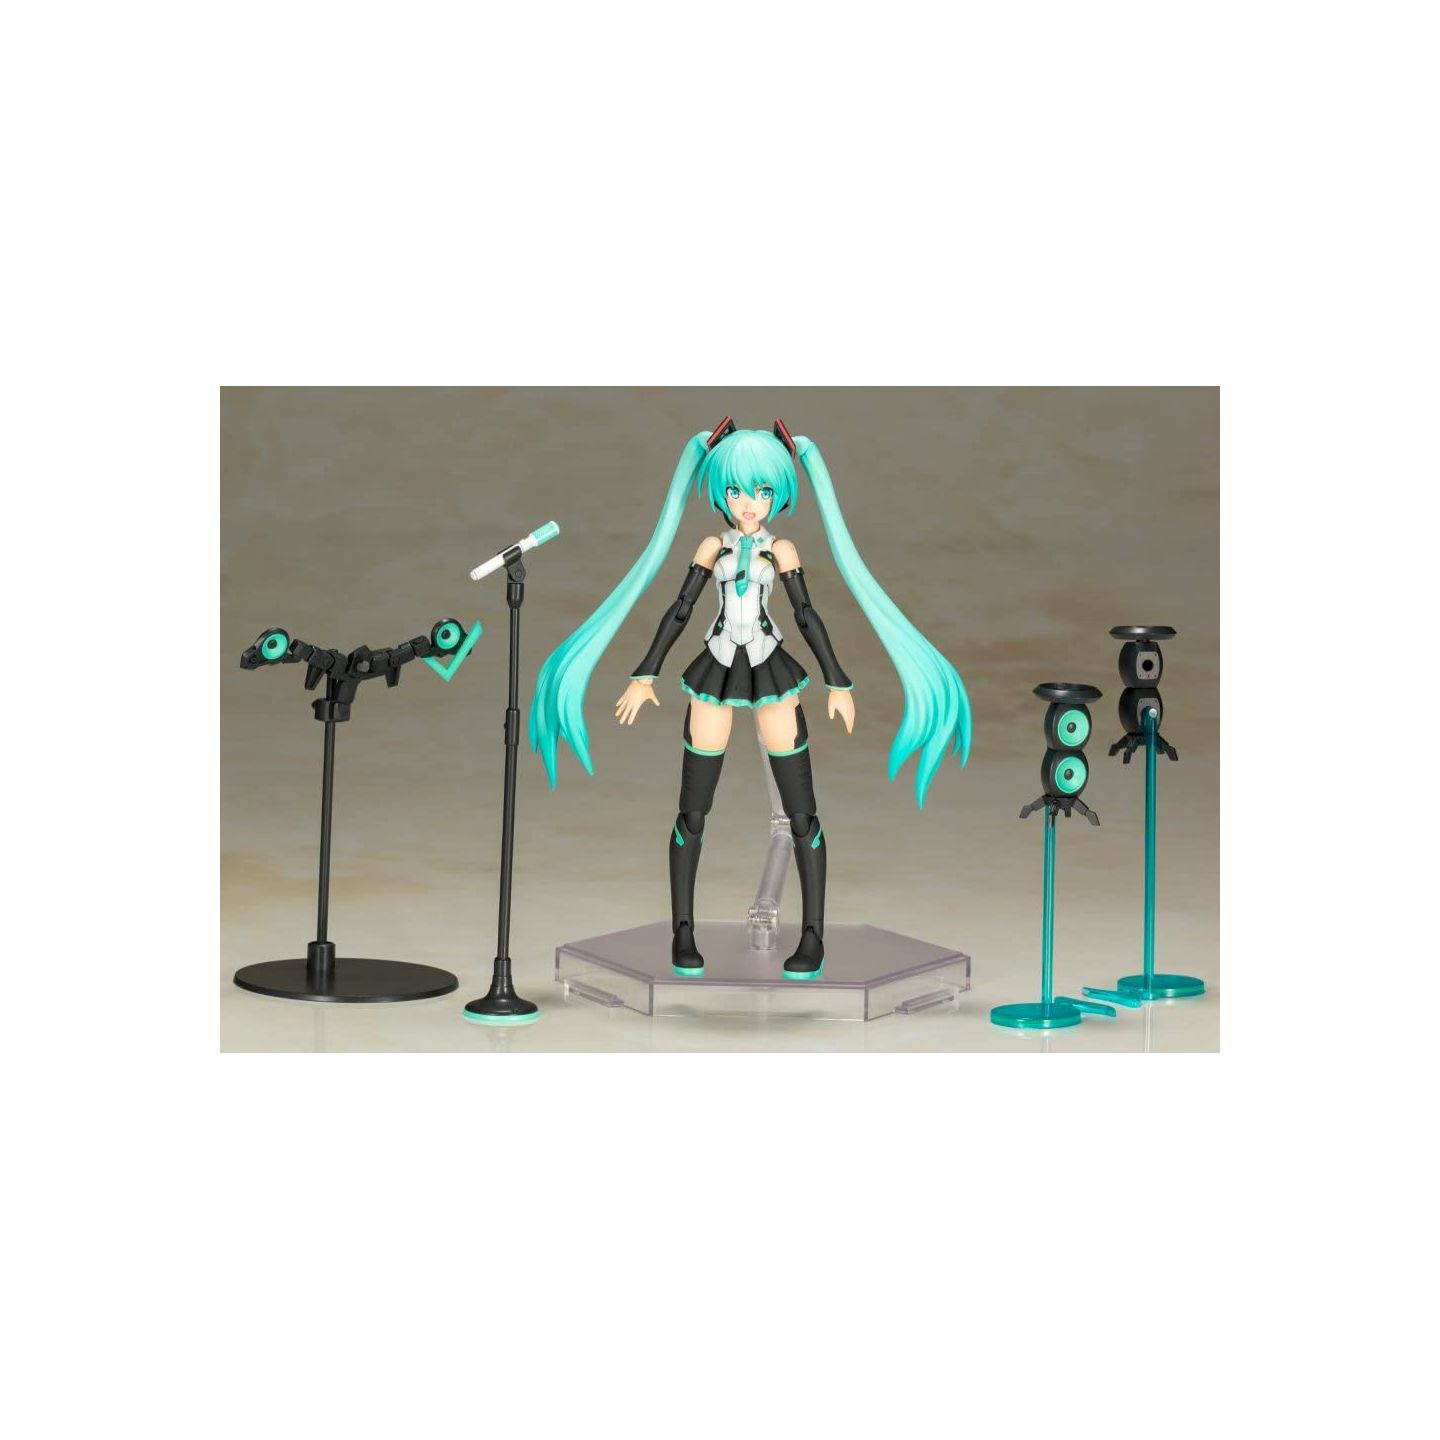 KOTOBUKIYA Frame Music The Girl Hatsune Miku 4934054005581 Arms Fg059 Anime for sale online